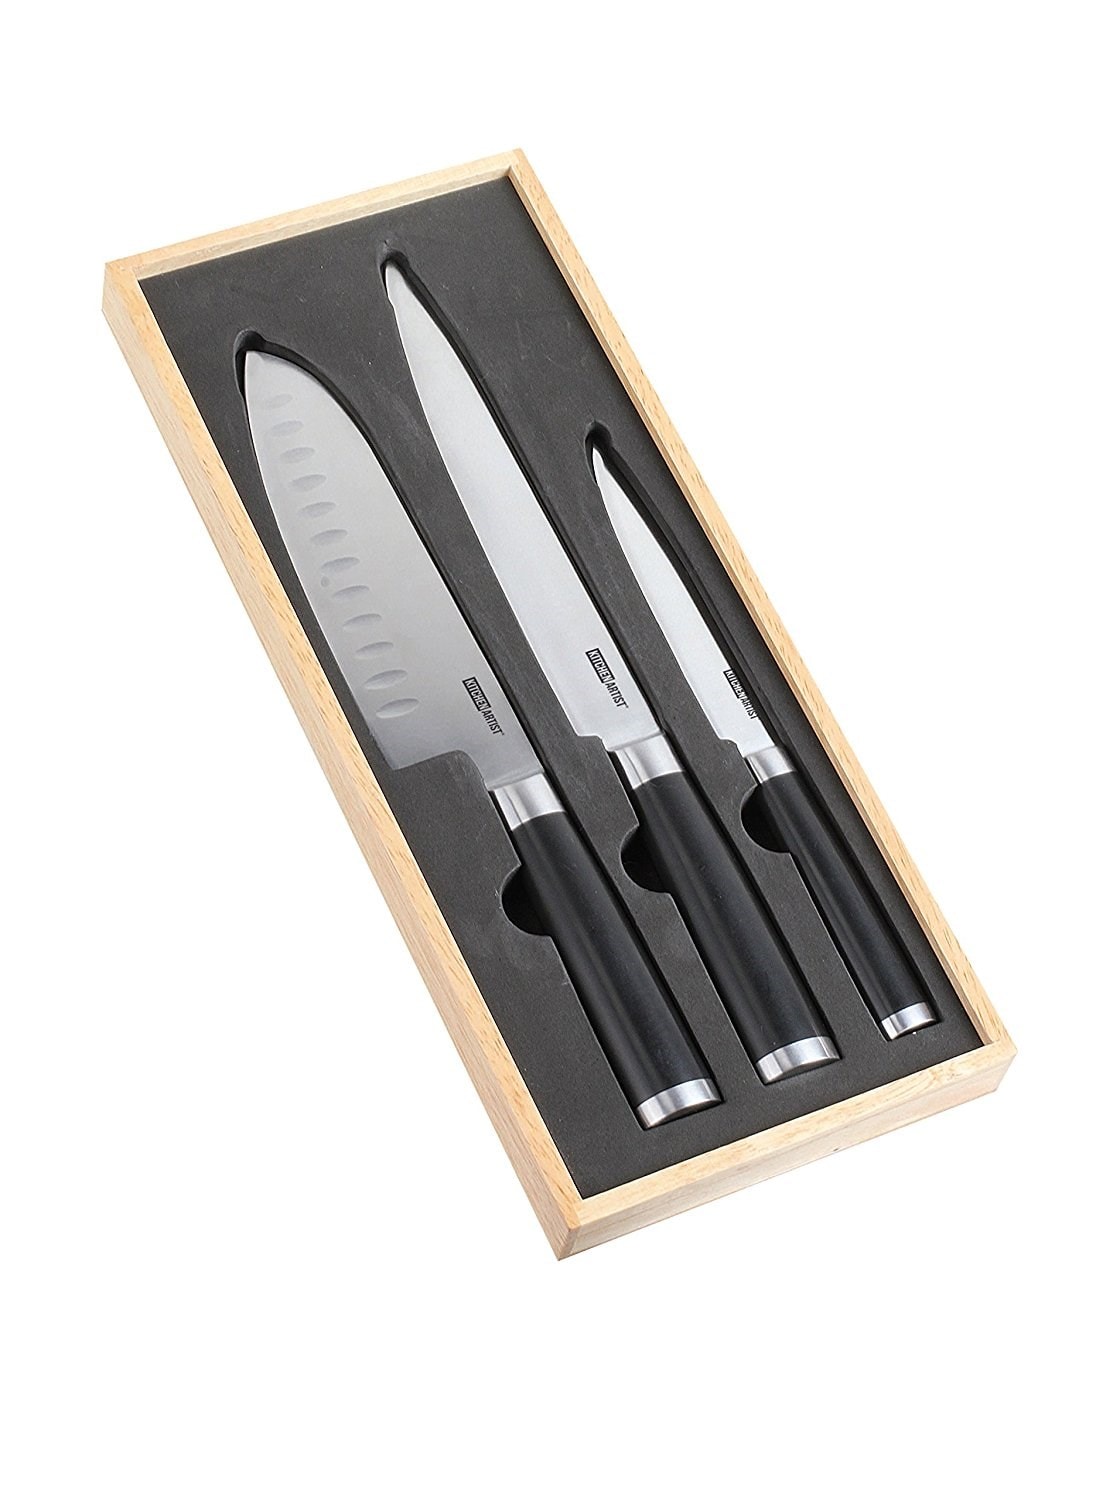 Set de 3 couteaux japonais en coffret MEC115 KITCHEN ARTIST mec115 Pas Cher  